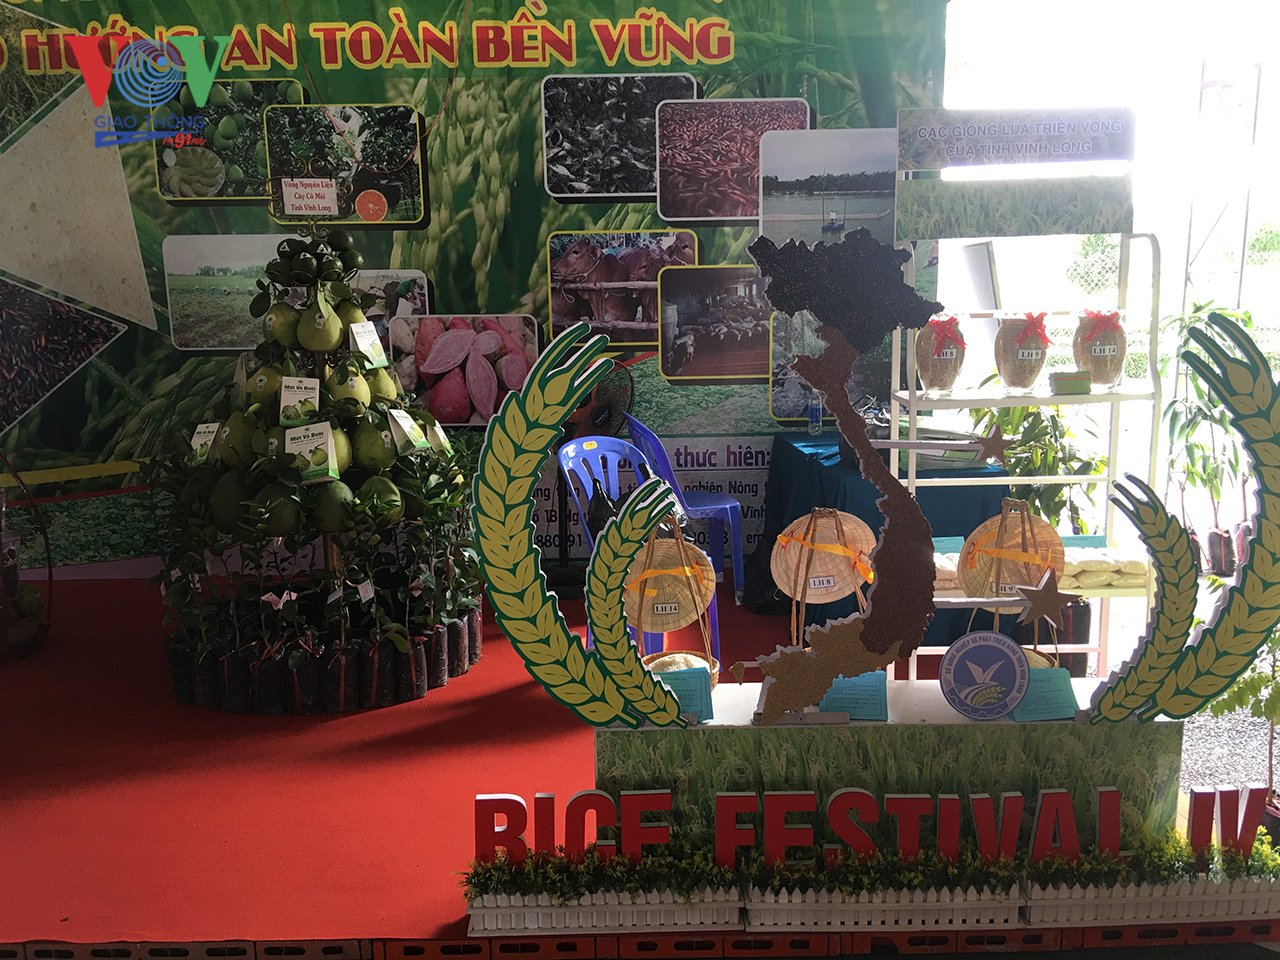 Vĩnh Long: Sẵn sàng cho Festival lúa gạo lần IV năm 2019